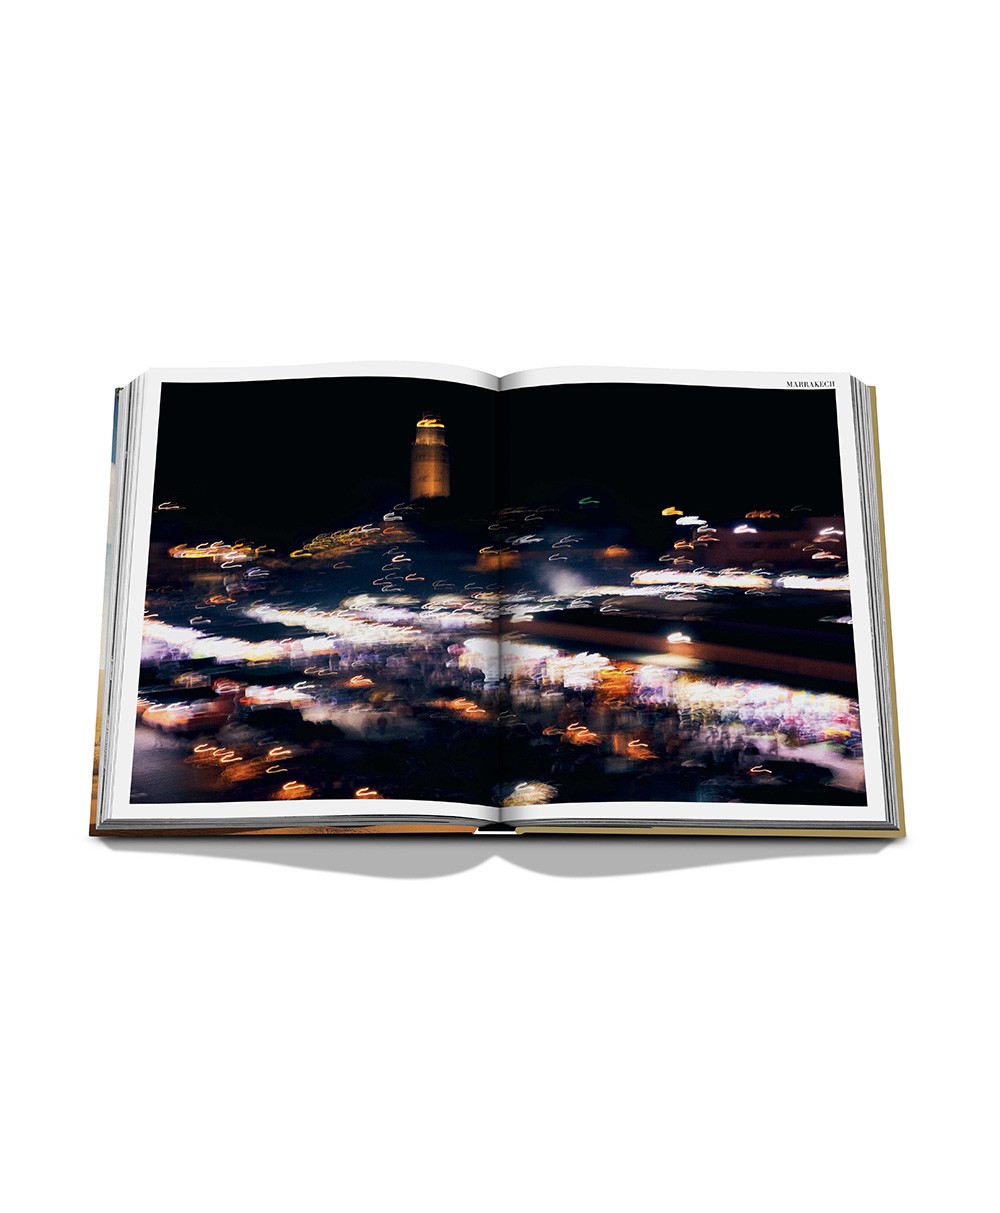 Hier abgebildet der Bildband Morocco Kingdom of Light von Assouline - RAUM concept store